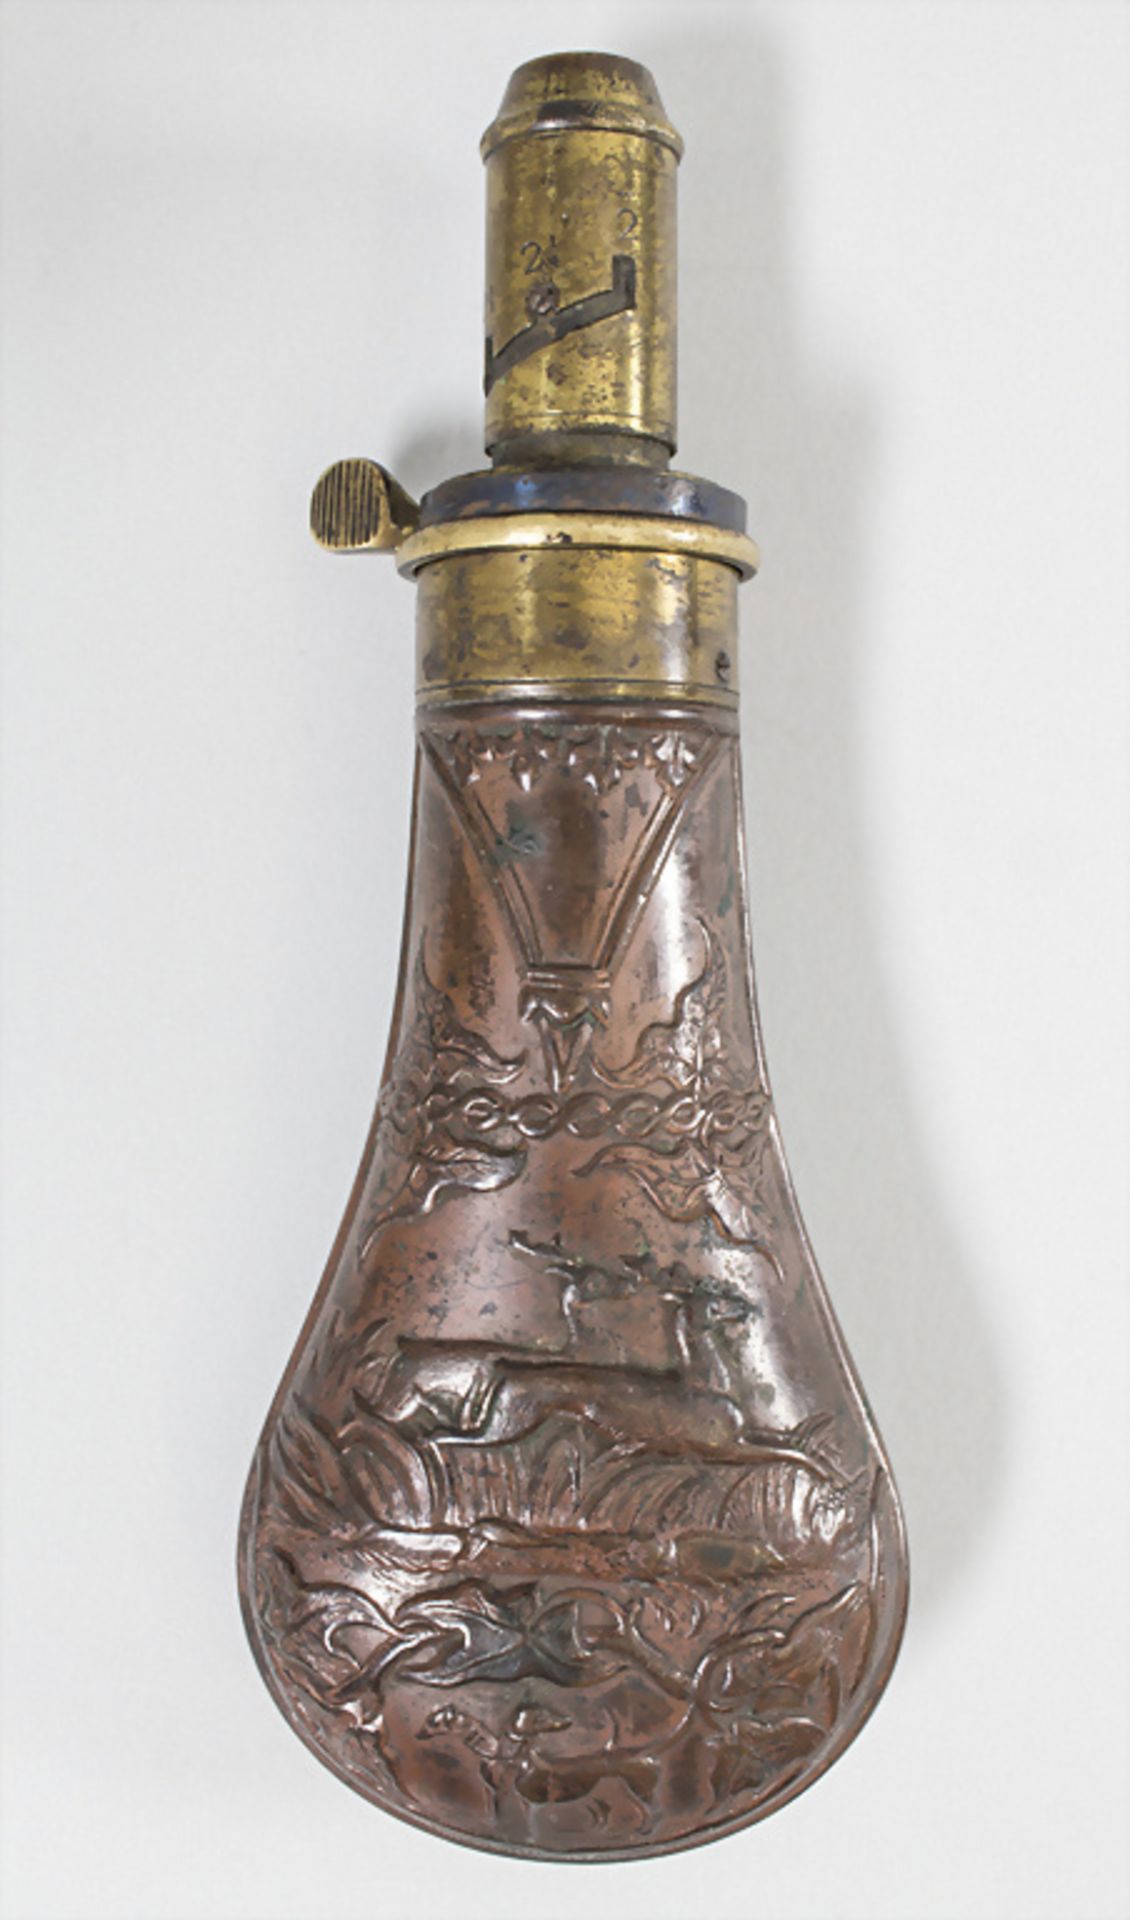 Pulverflasche / A powder bottle, Ende 19. Jh.